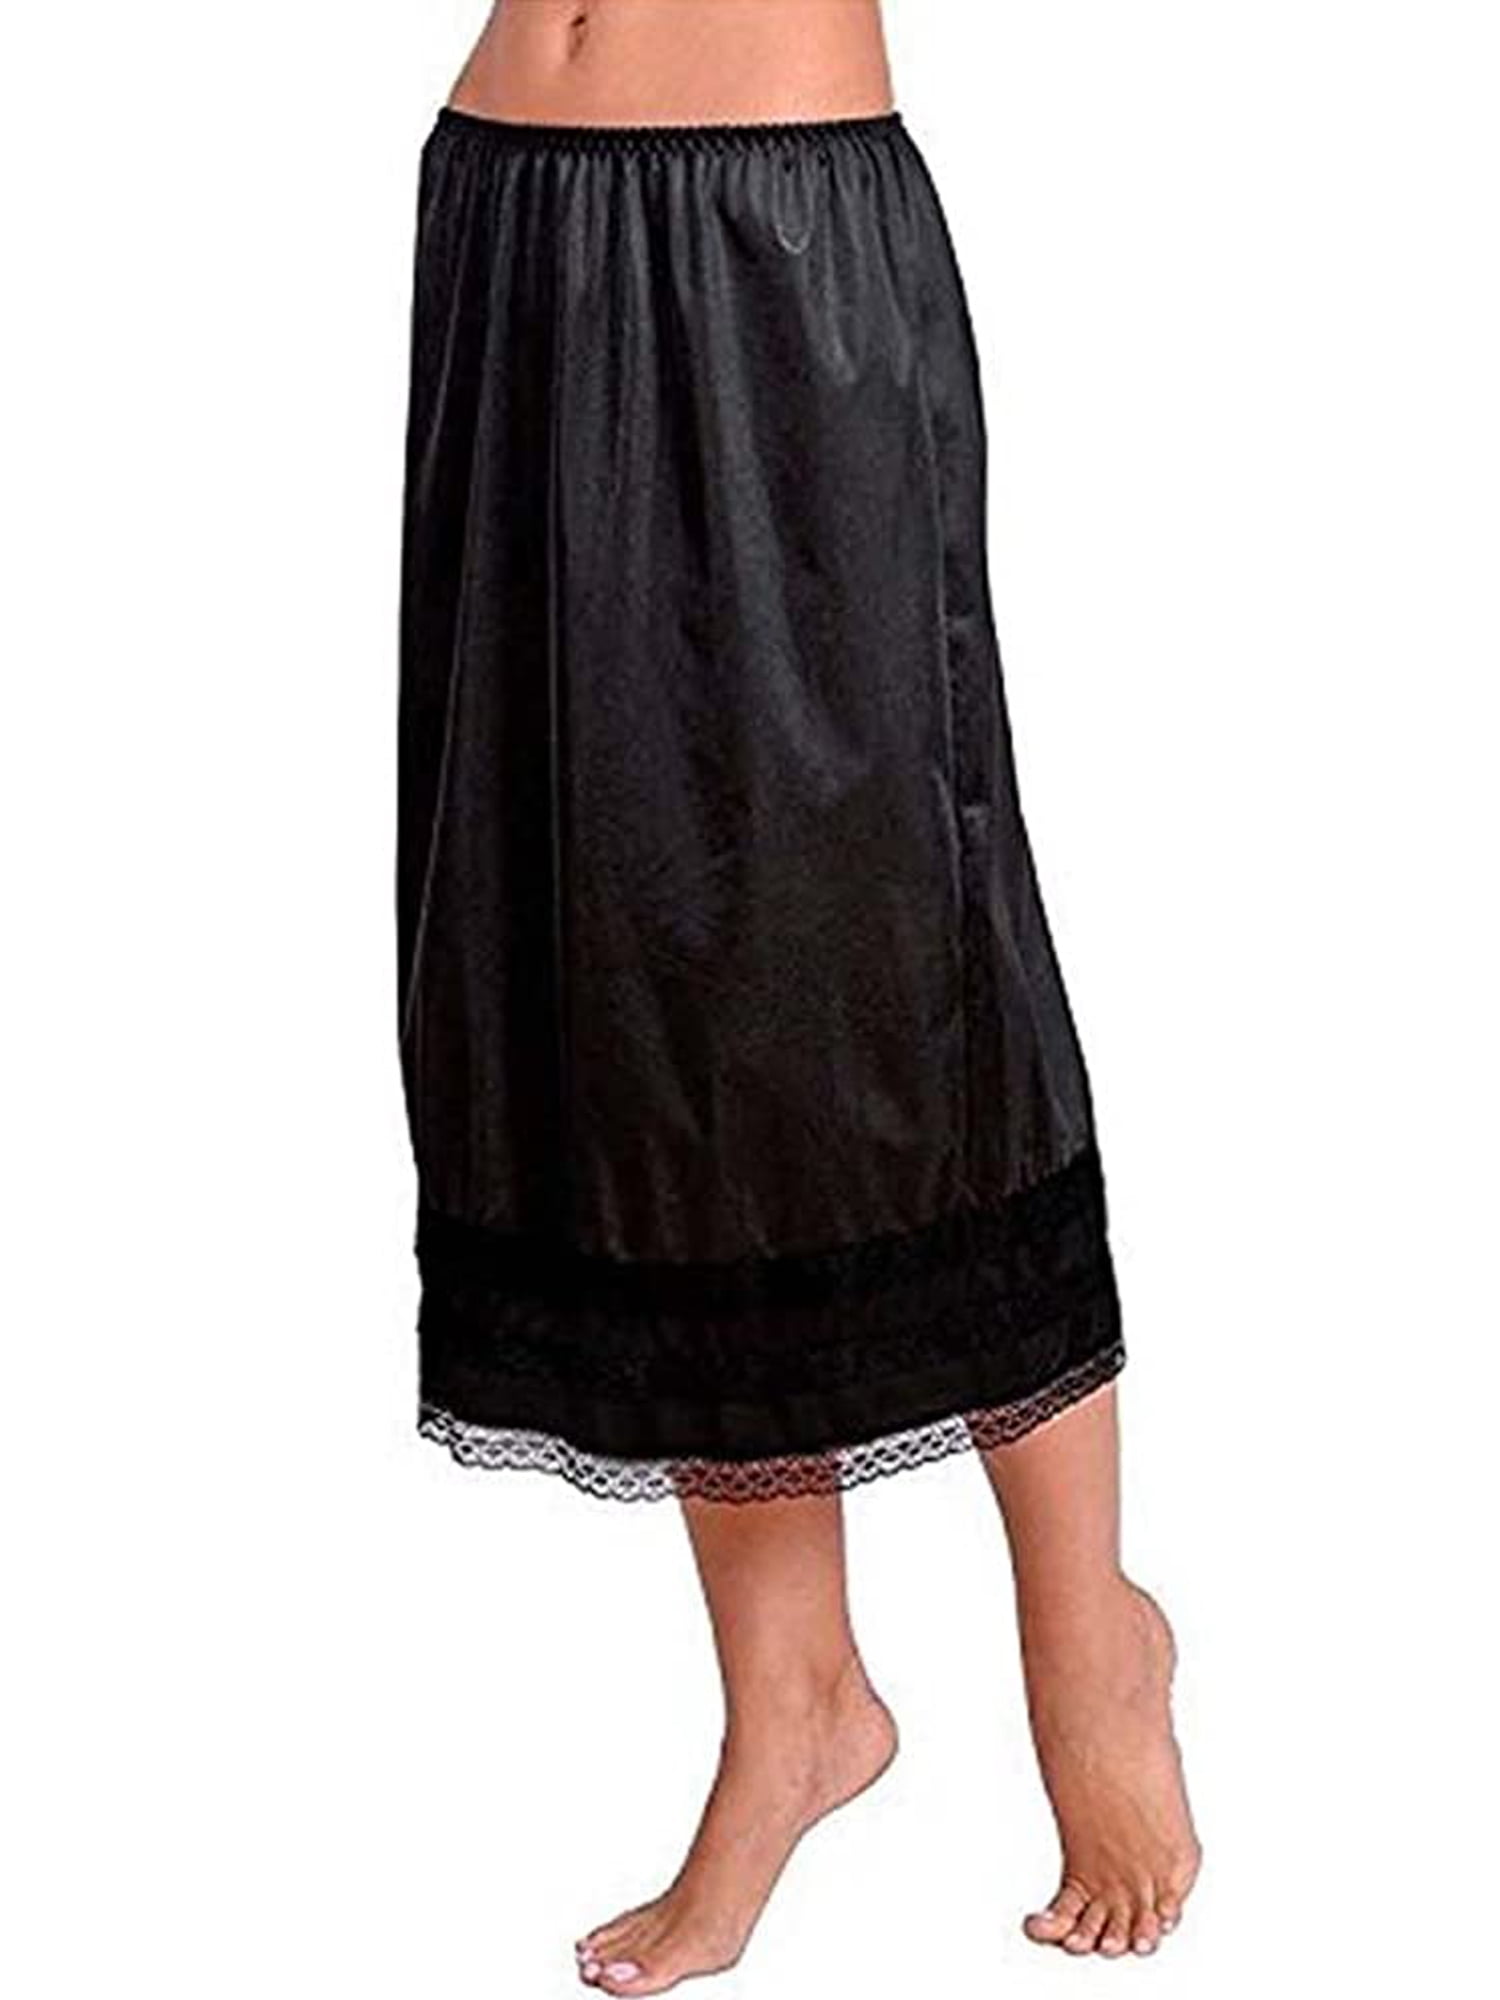 Womens Black Beige Long Length Vintage Retro Full Slip Petticoat for Under Dress